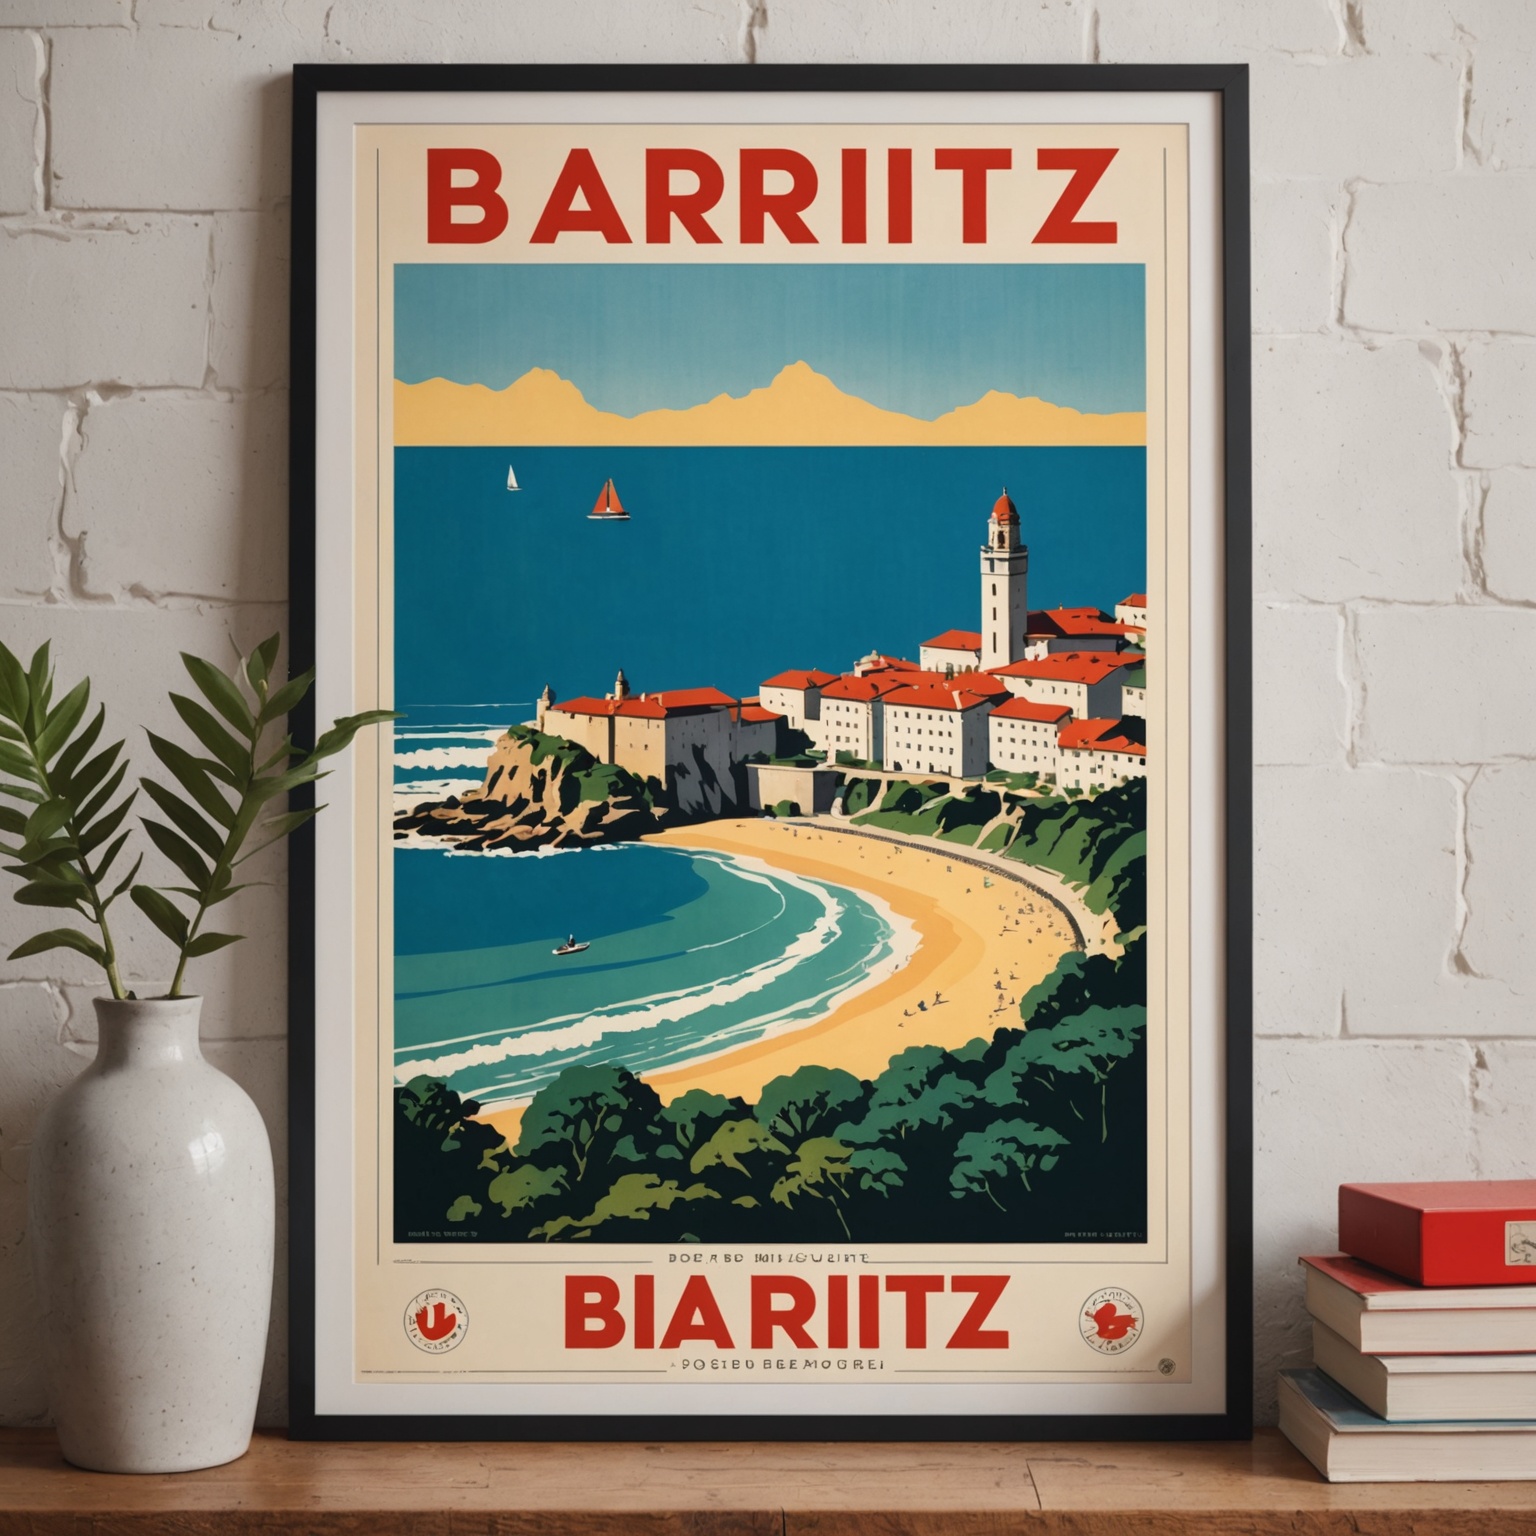 Décoration Rétro : Comment une Affiche Vintage de Biarritz Apporte Élégance et Charme d’Antan à votre Intérieur